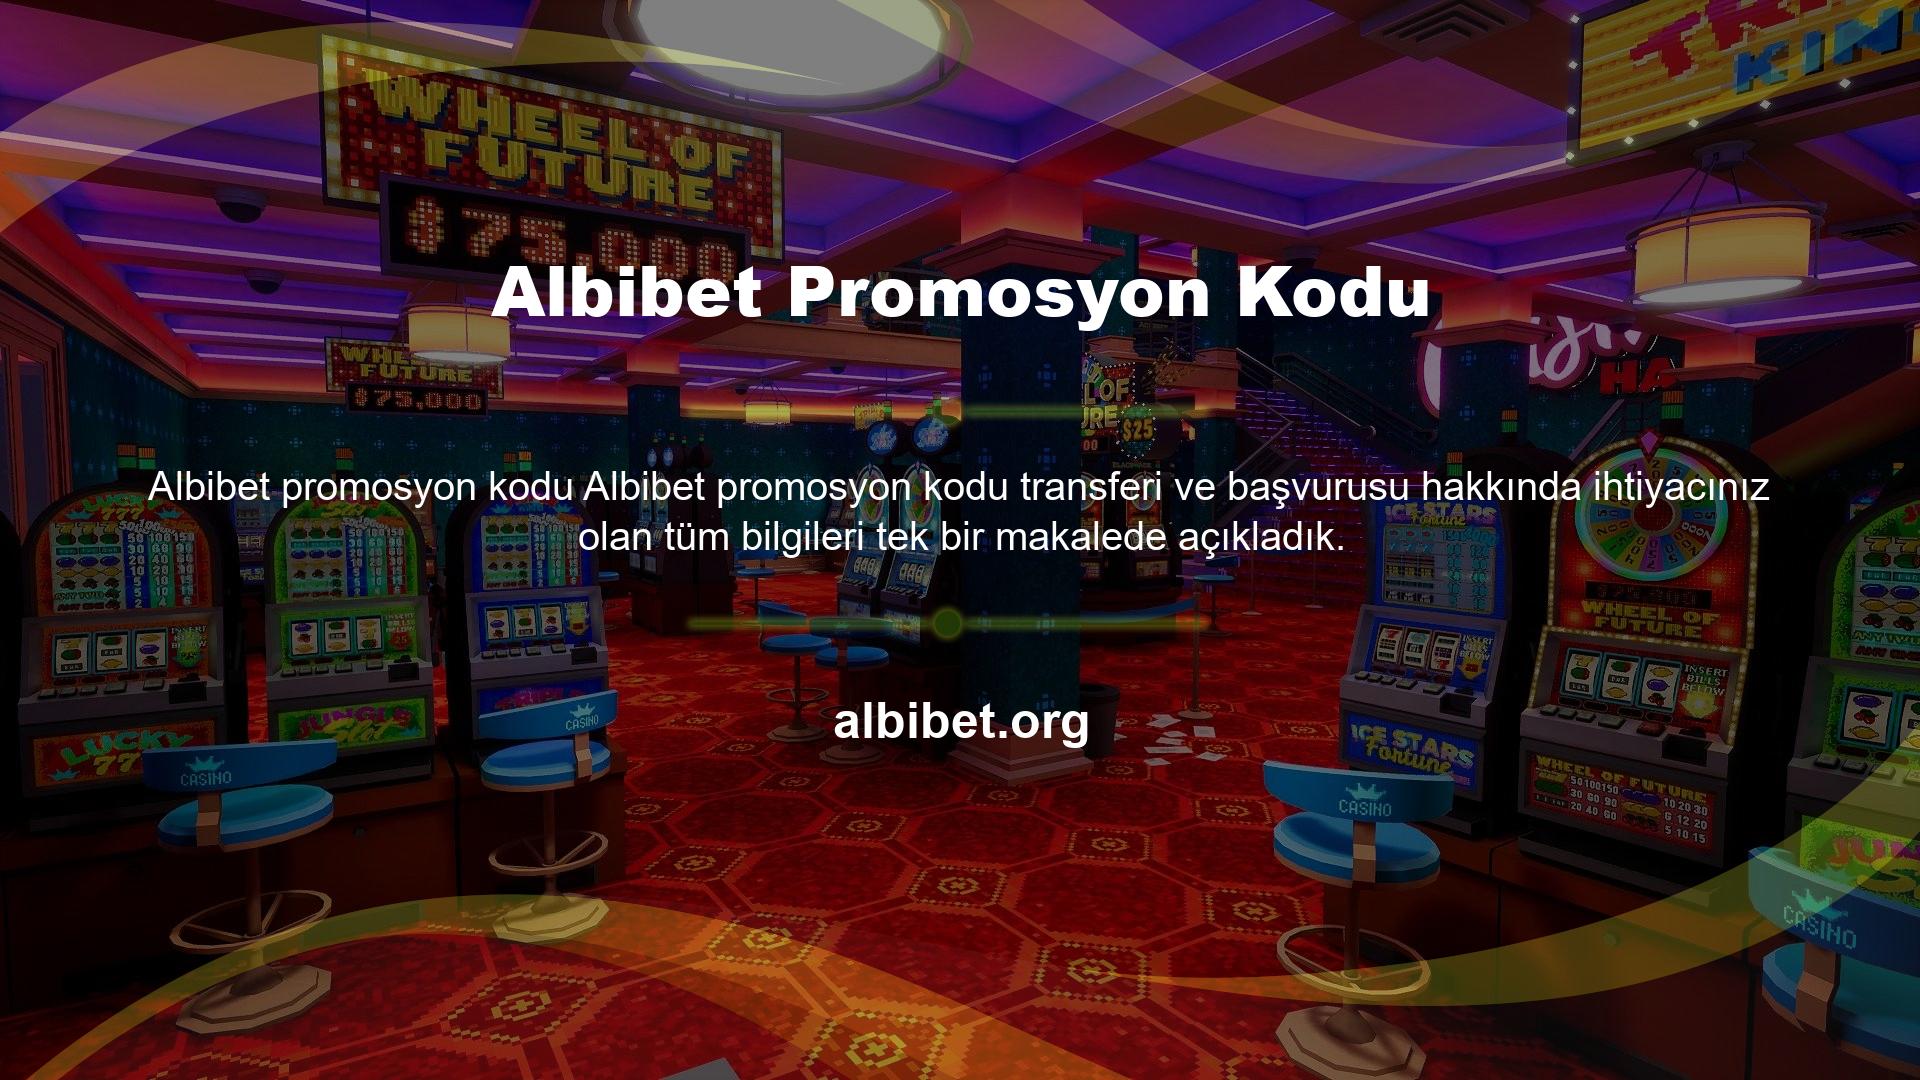 Albibet Promosyon Kodu Site birkaç çeşit yüksek fayda sağlayan bonus sunduğundan, birçok üyenin ilk istekleri etkinlik istekleridir